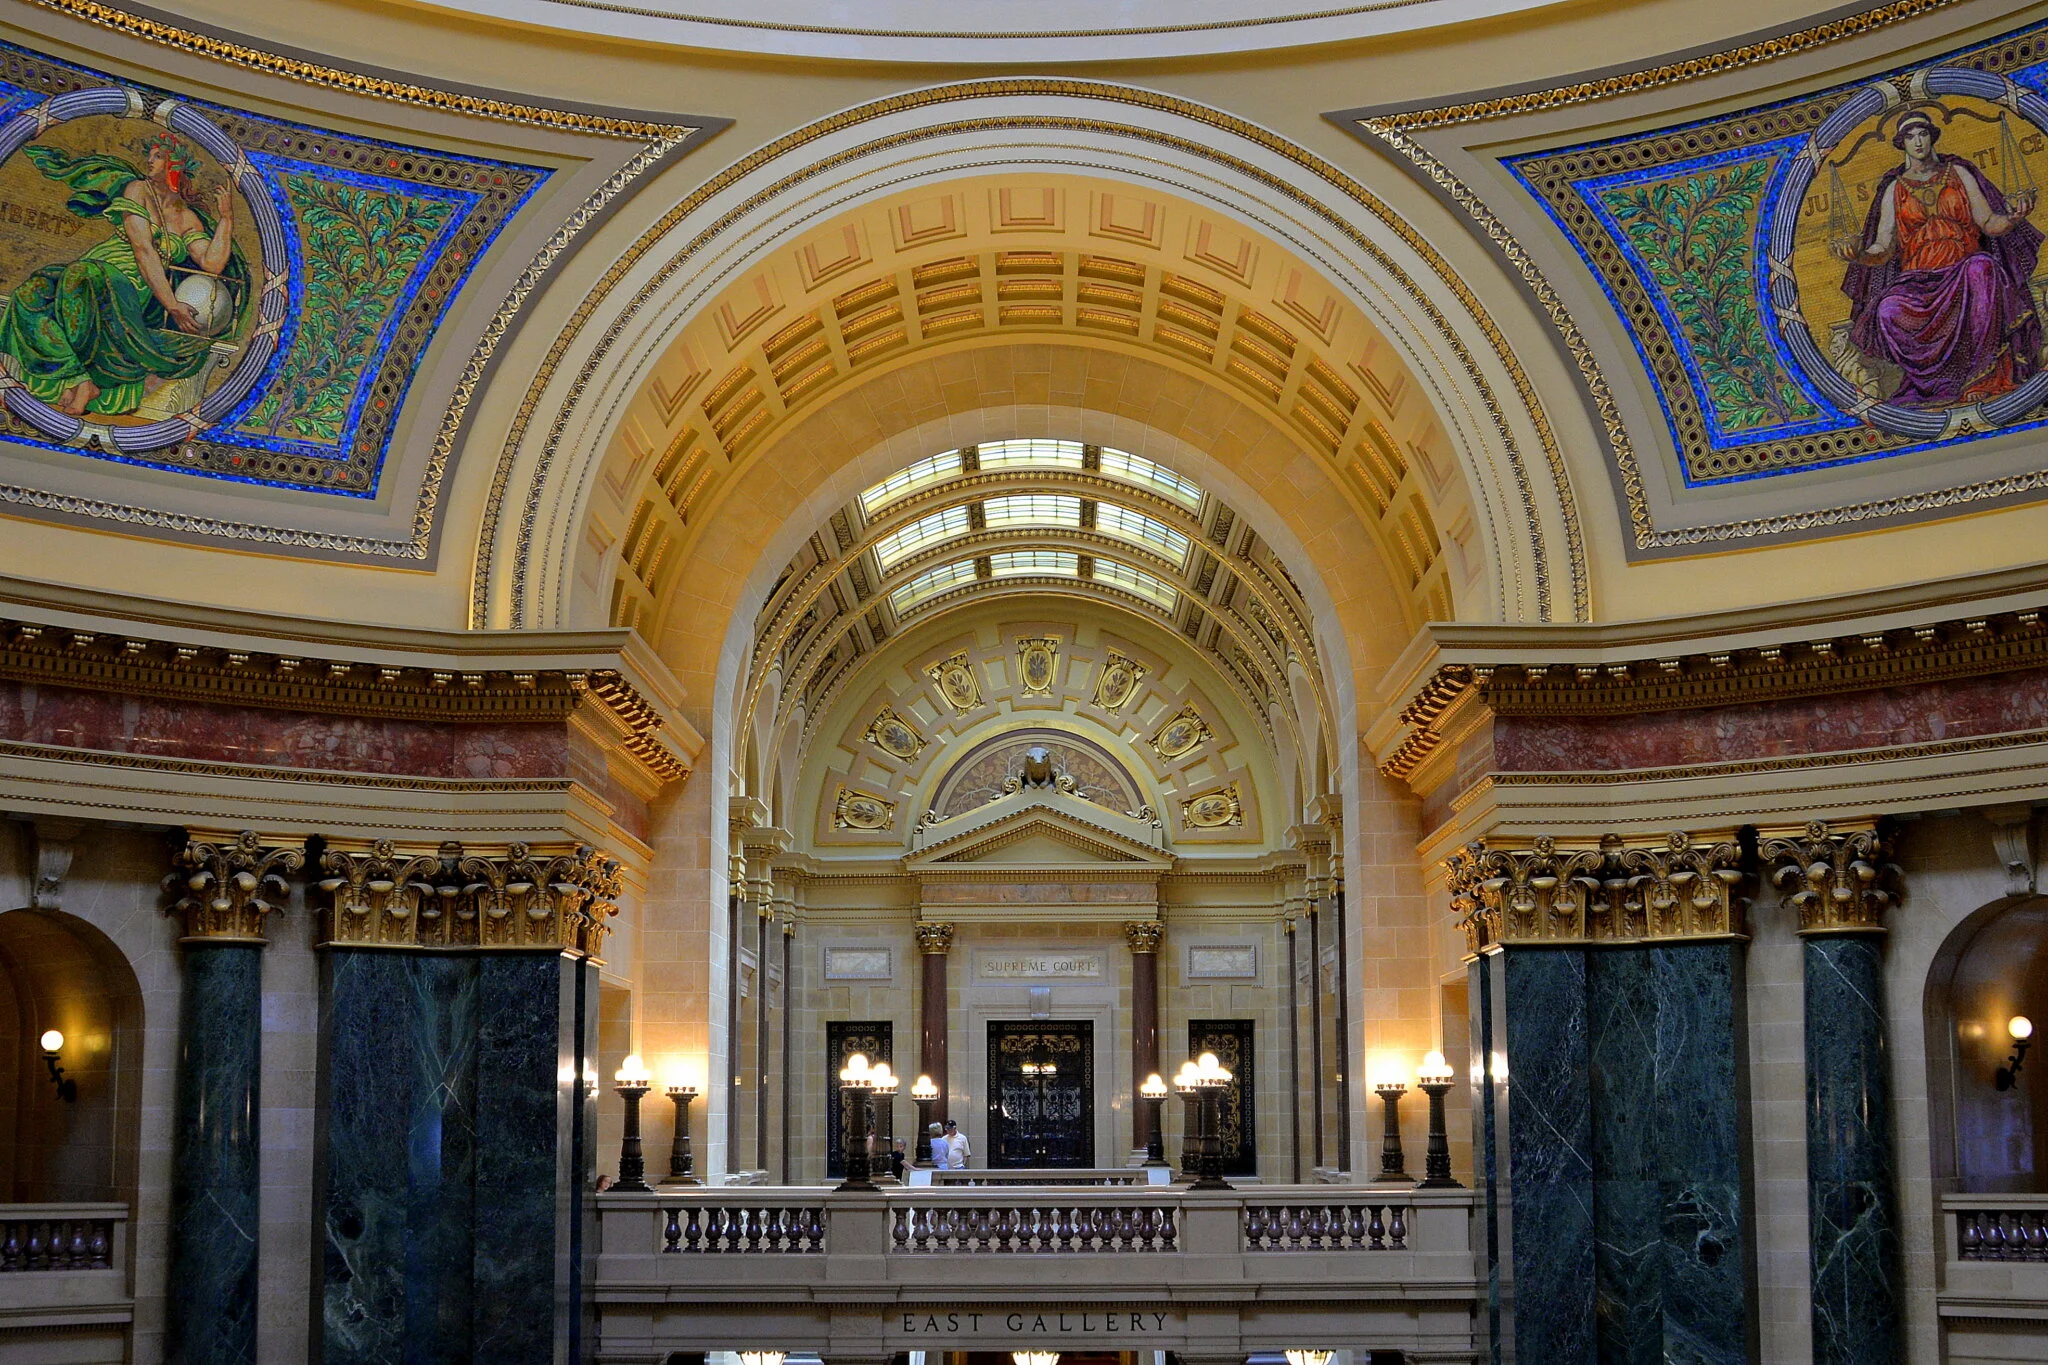 Wisconsin Capitol interior